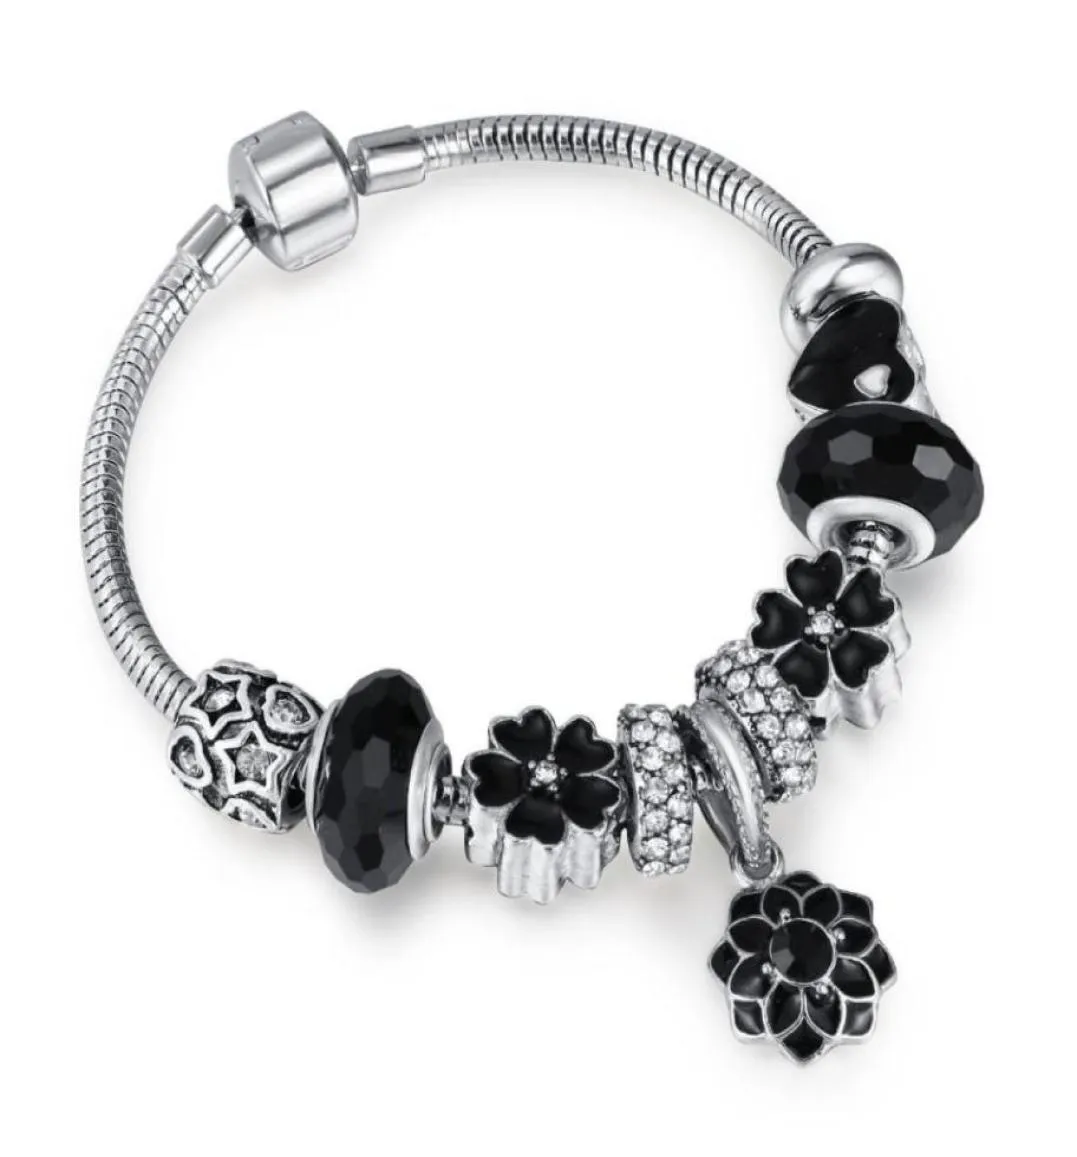 NUOVI perle in stile nero in bracciale da 3 mm in rilievo dly glamour girl regalo con gioielli squisiti regalo regalo 3554935551143